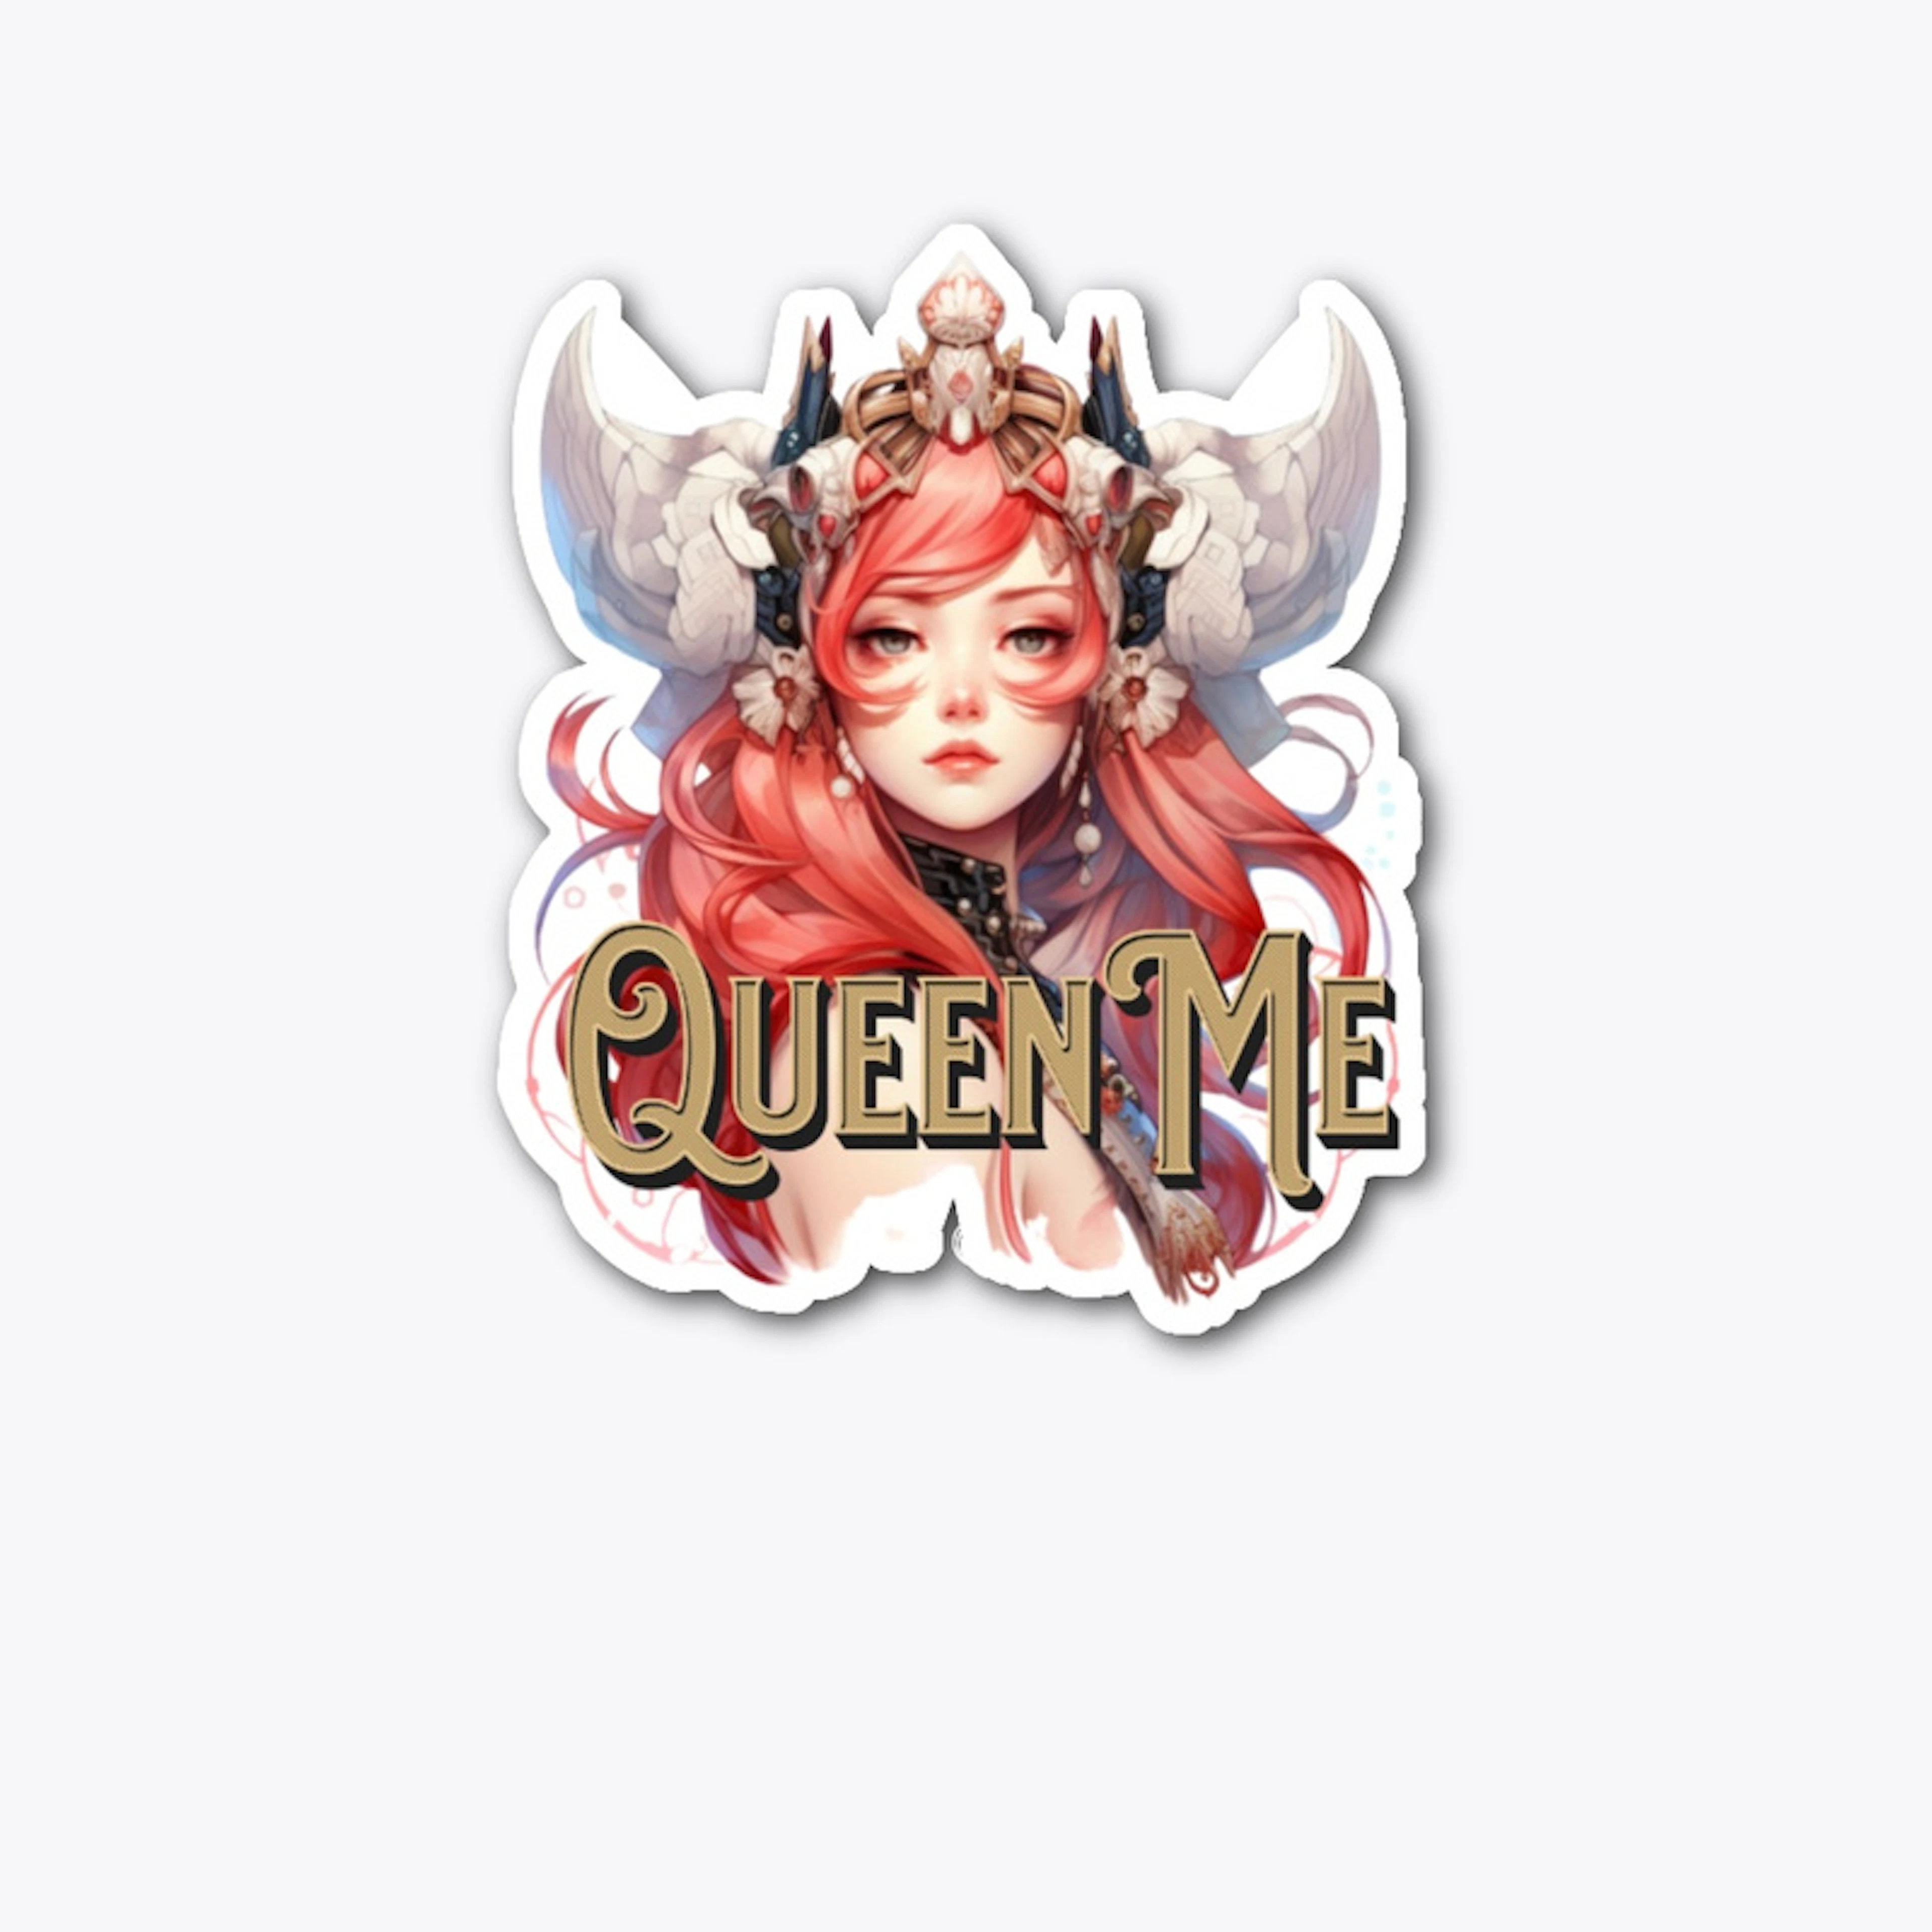 Queen Me!